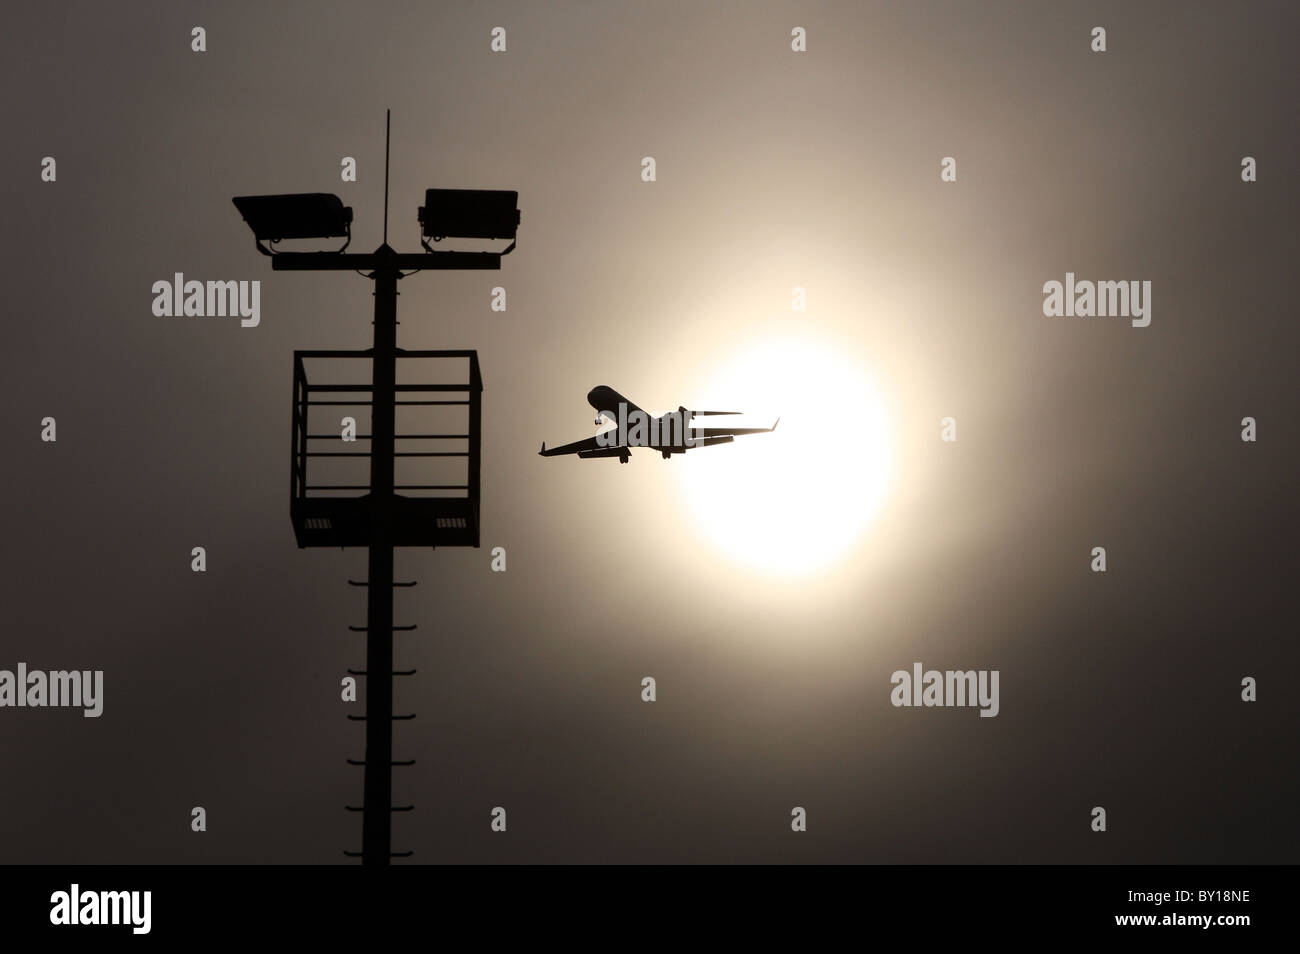 Un avion de passagers peu après le décollage avec le soleil en arrière-plan Banque D'Images